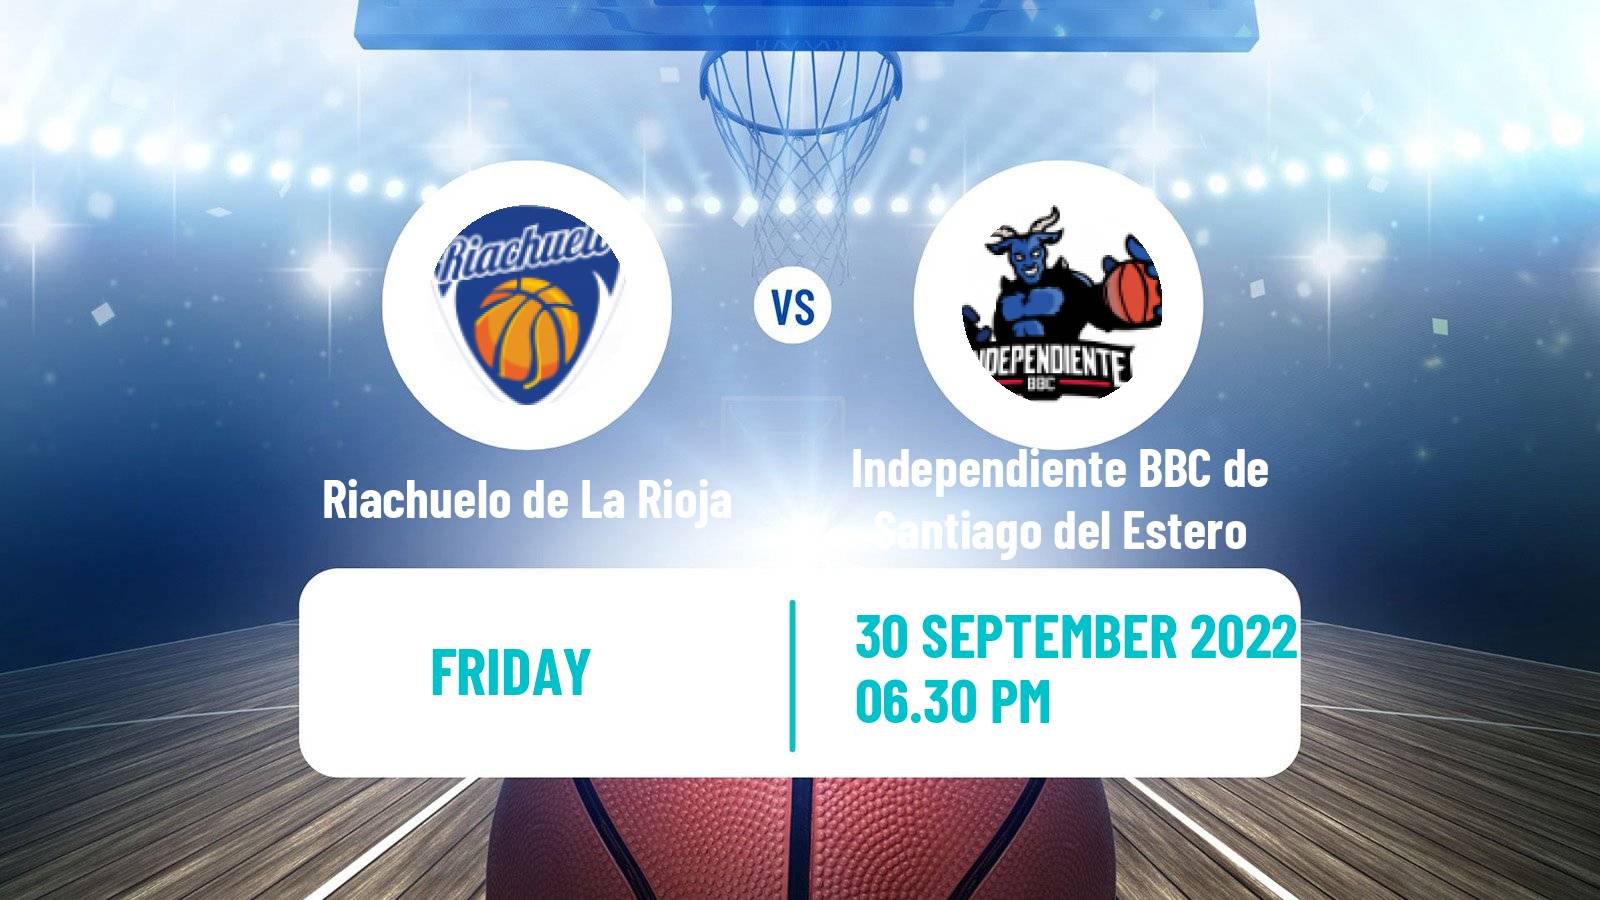 Basketball Club Friendly Basketball Riachuelo de La Rioja - Independiente BBC de Santiago del Estero